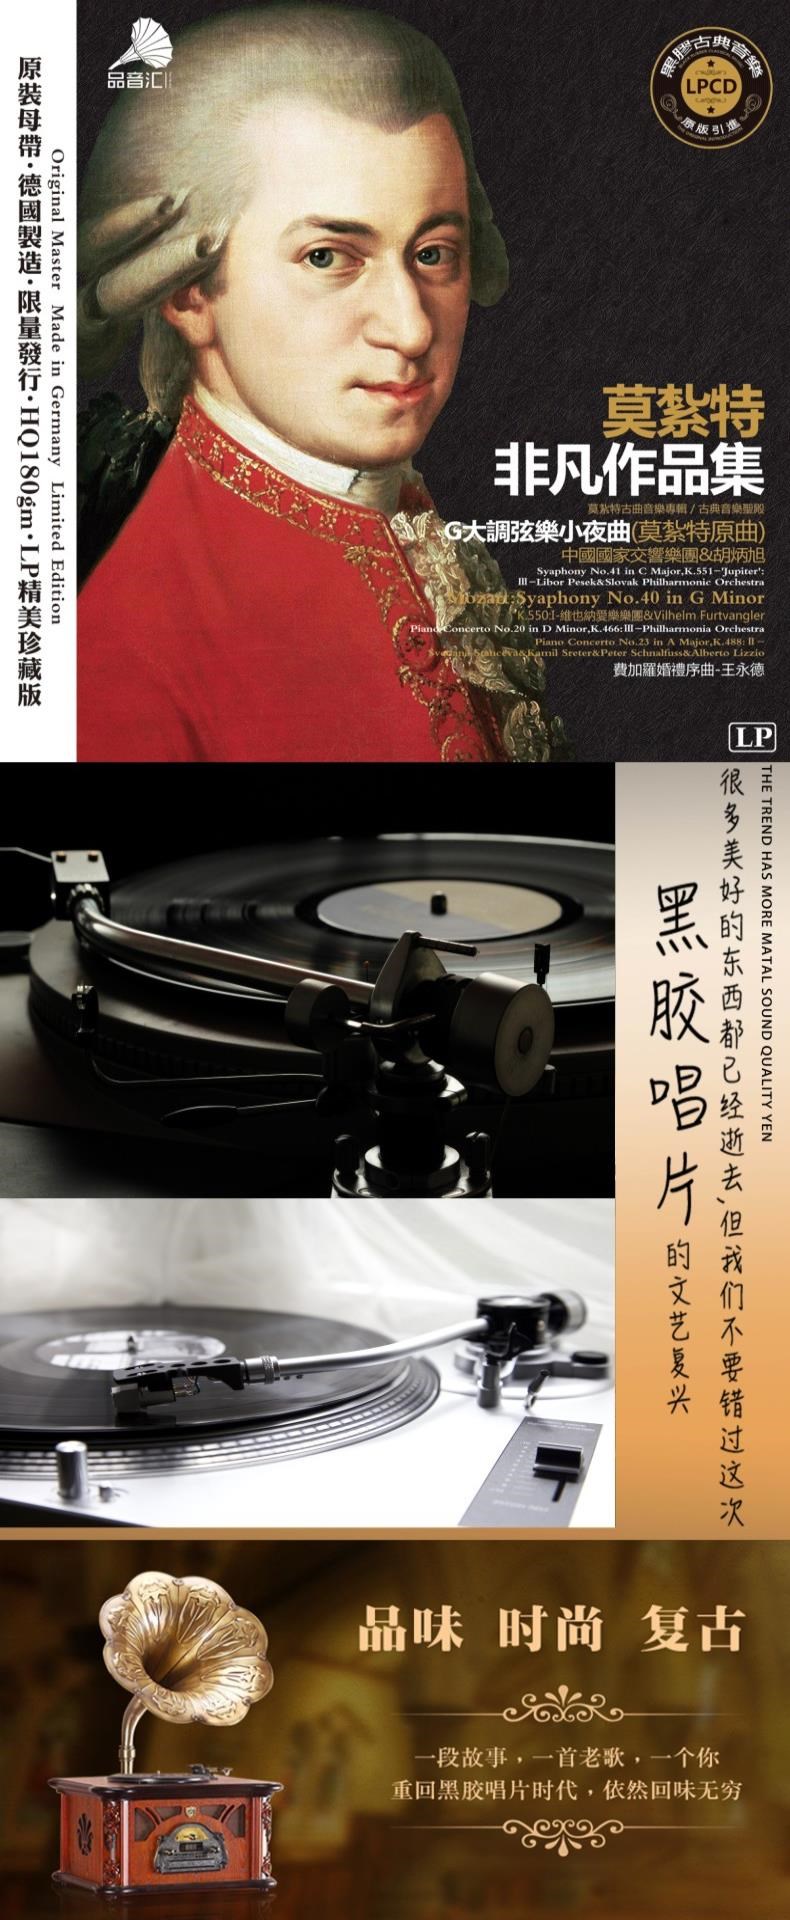 Mozart cao cấp Alan Tam Chopin Zhang Mingmin lp đĩa quay đĩa hát đĩa vinyl album 12 - Máy hát